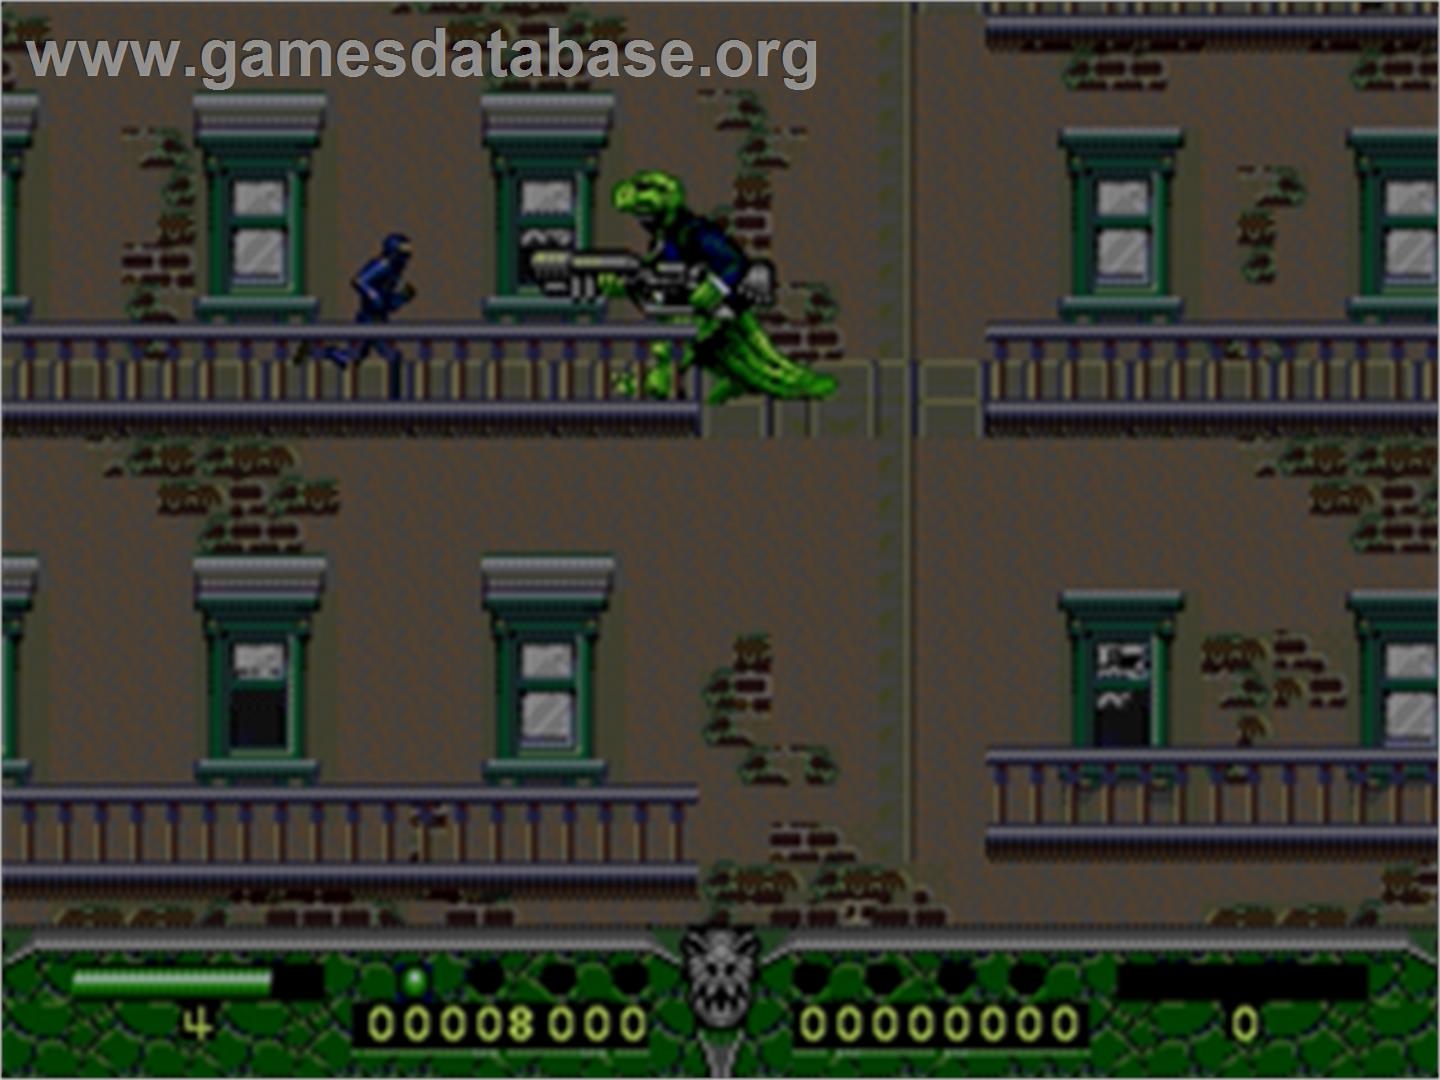 Dinosaurs for Hire - Sega Genesis - Artwork - In Game